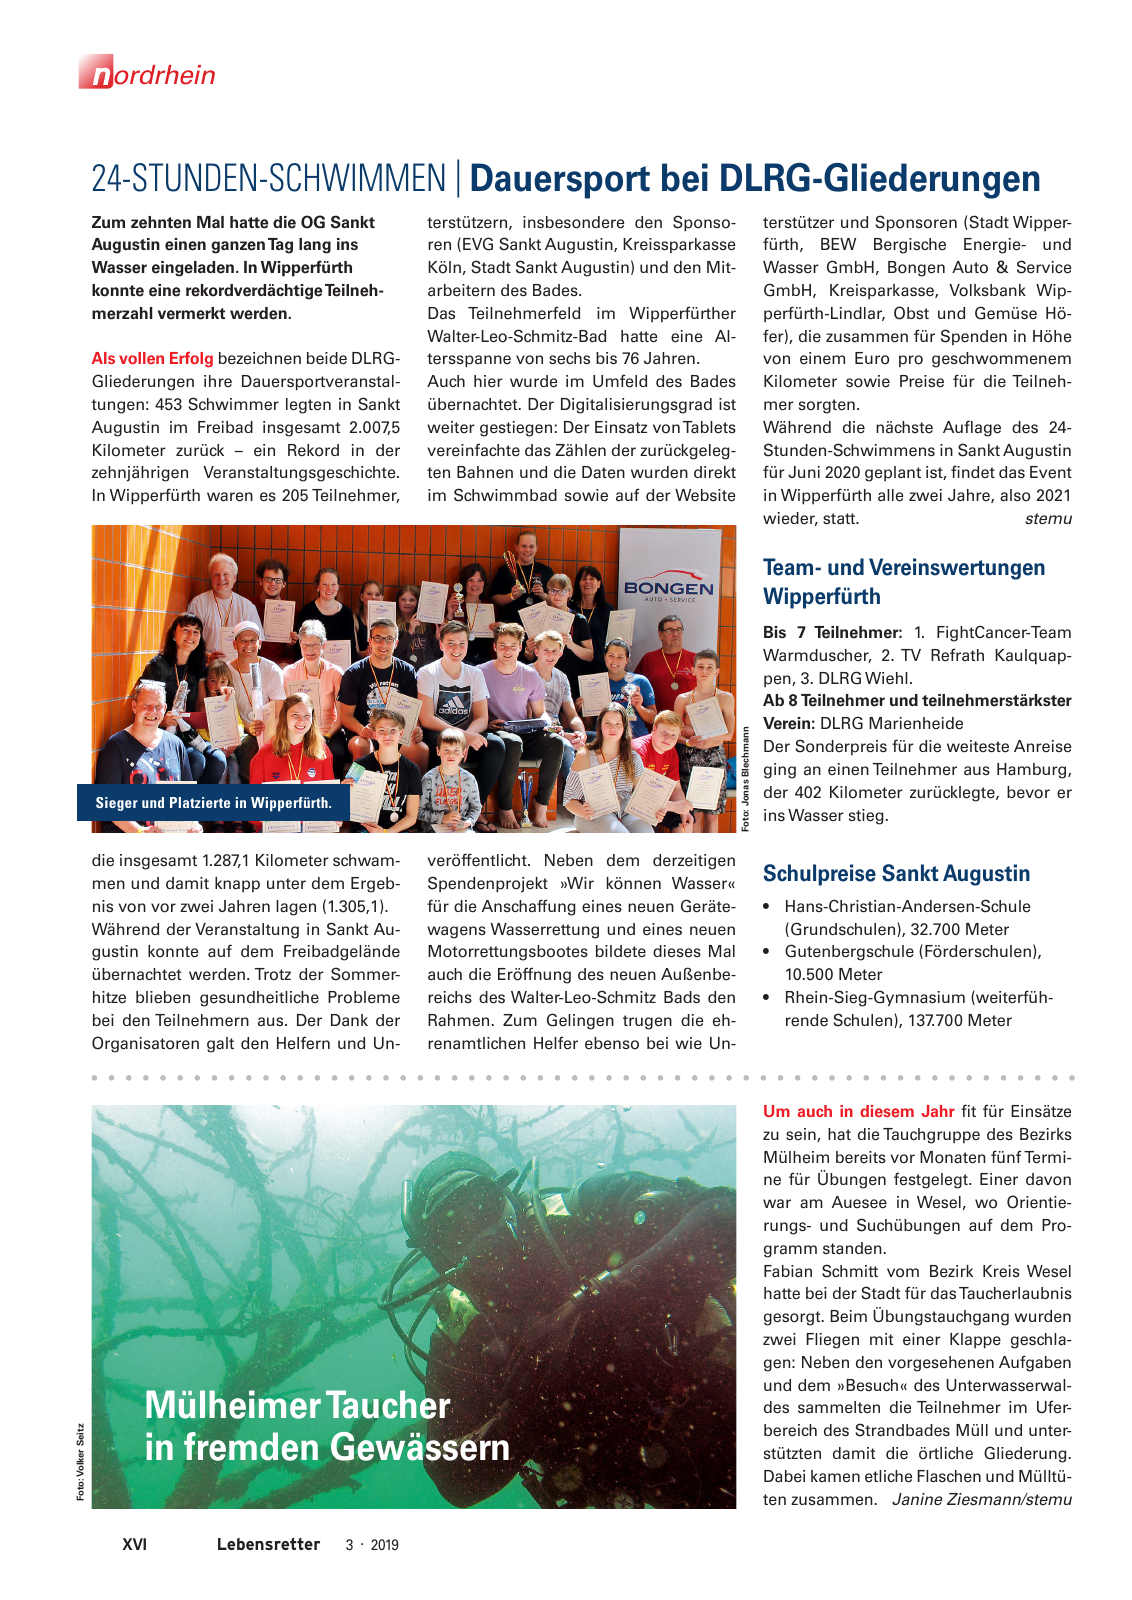 Vorschau Lebensretter 3/2019 - Nordrhein Regionalausgabe Seite 18